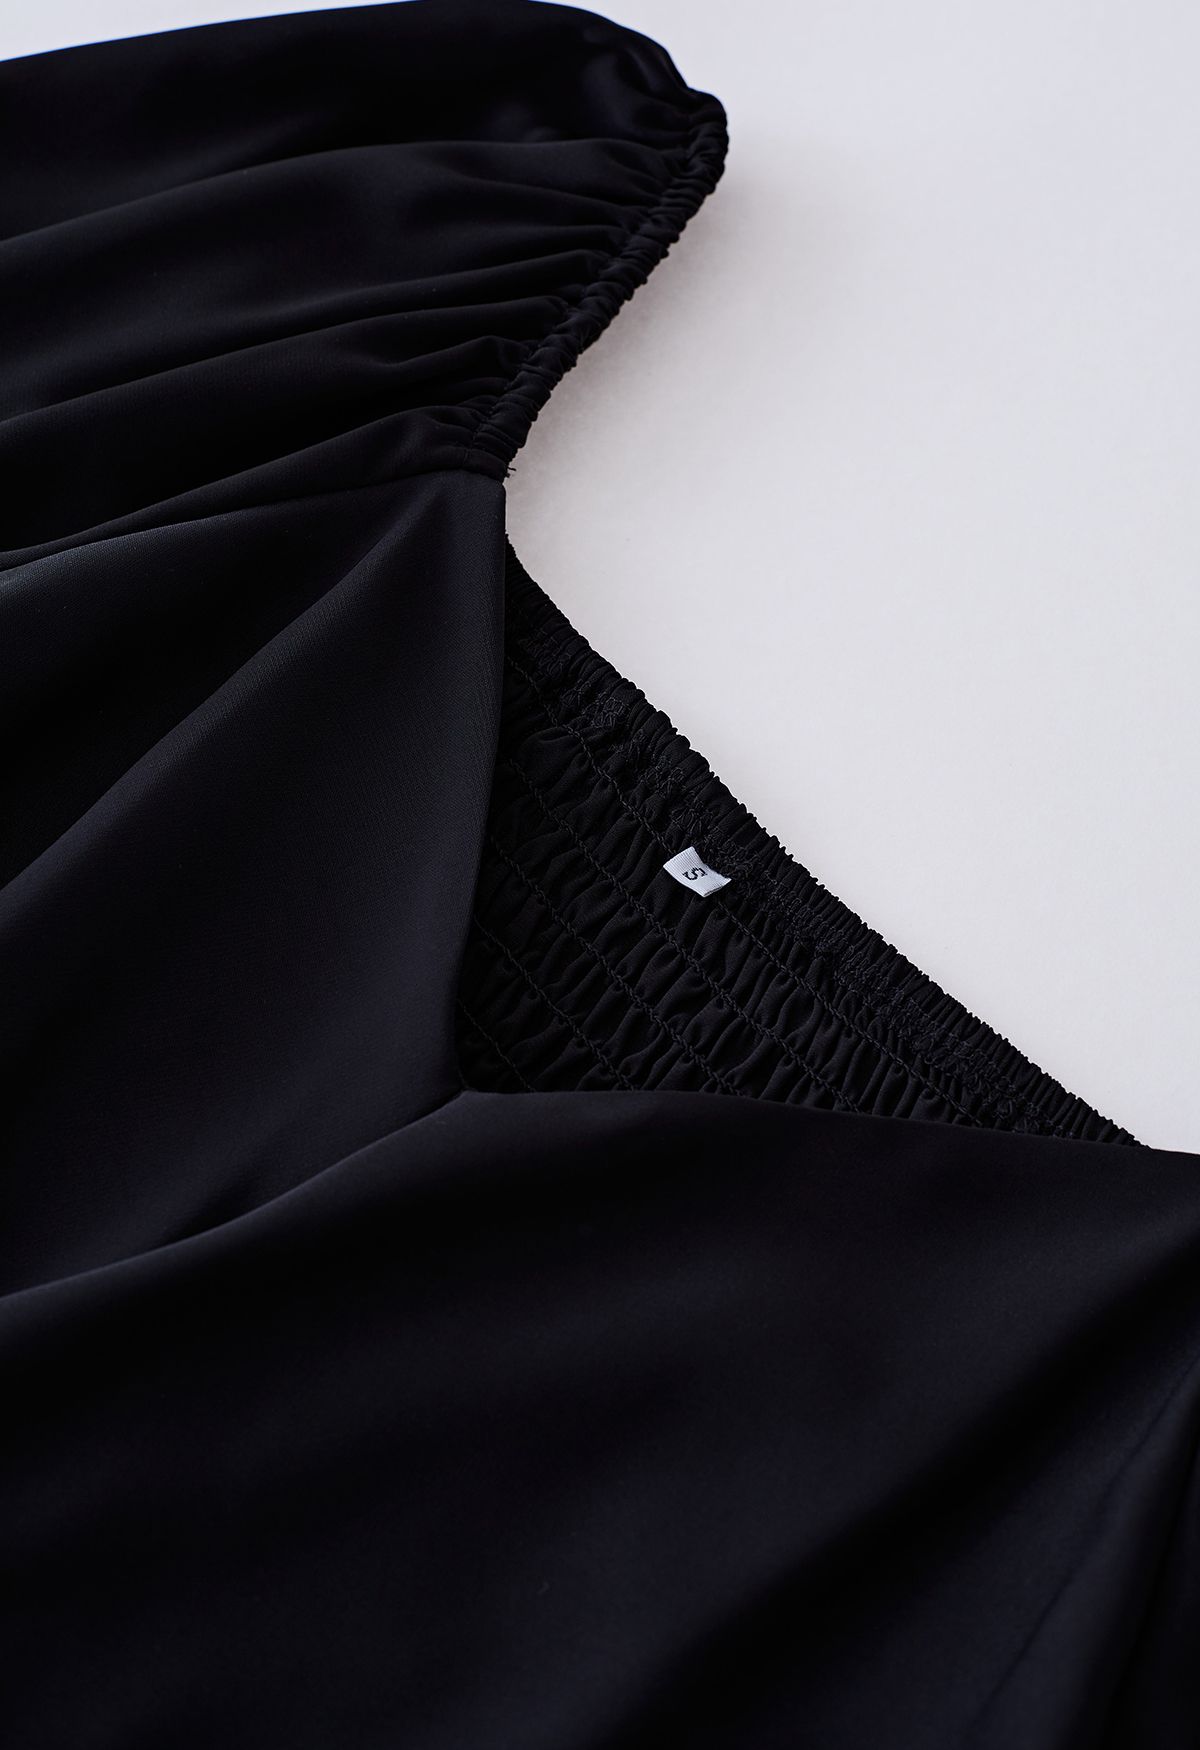 Cross Ribbon Flutter Sleeves Ruffle Dress in Black